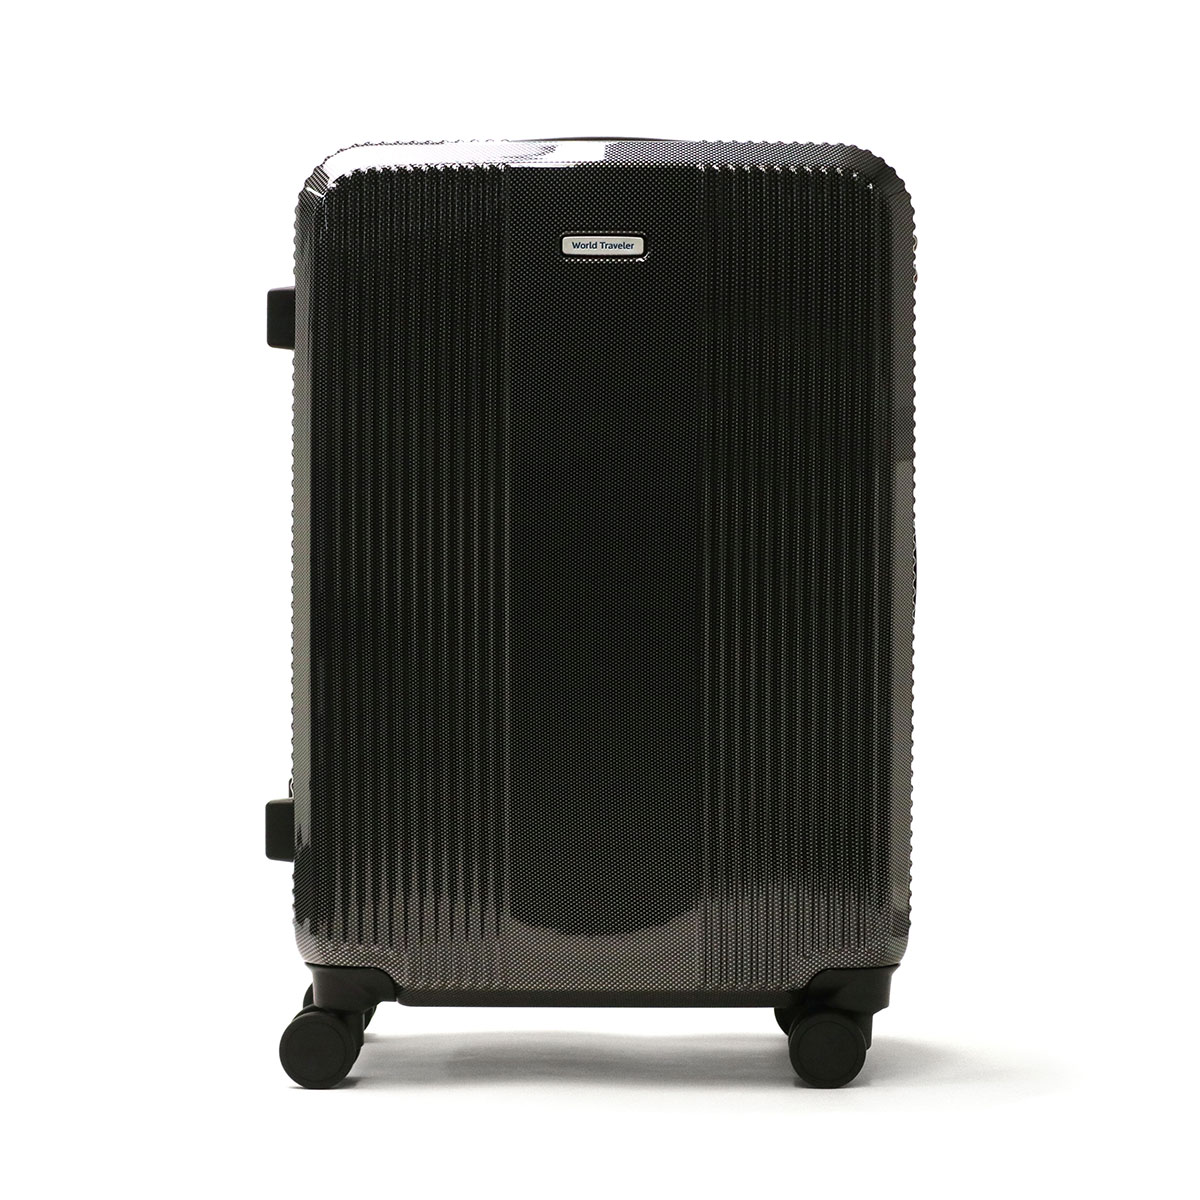 ワールドトラベラー スーツケース World Traveler ボトムベイ Mサイズ 